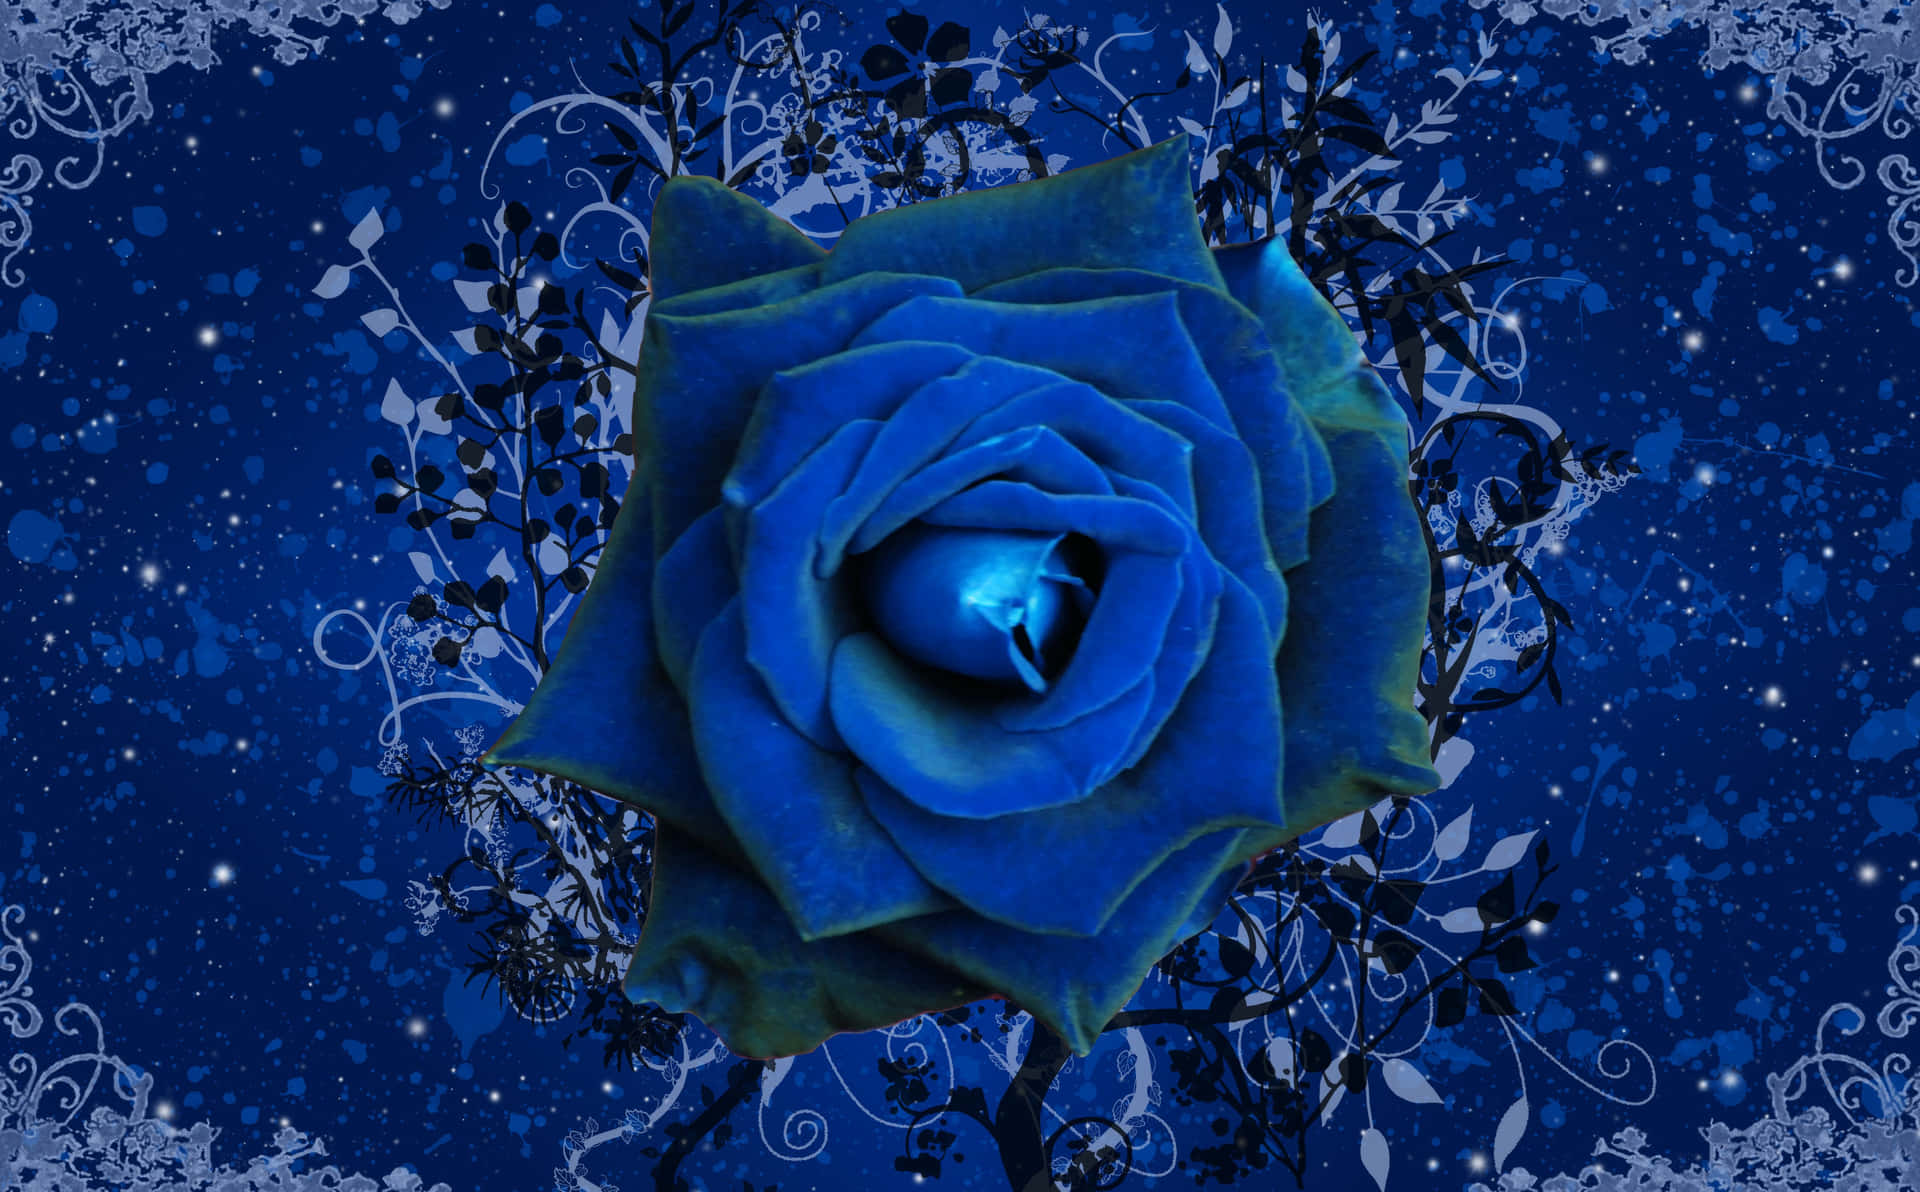 Fint og smukt blå rose design. Wallpaper